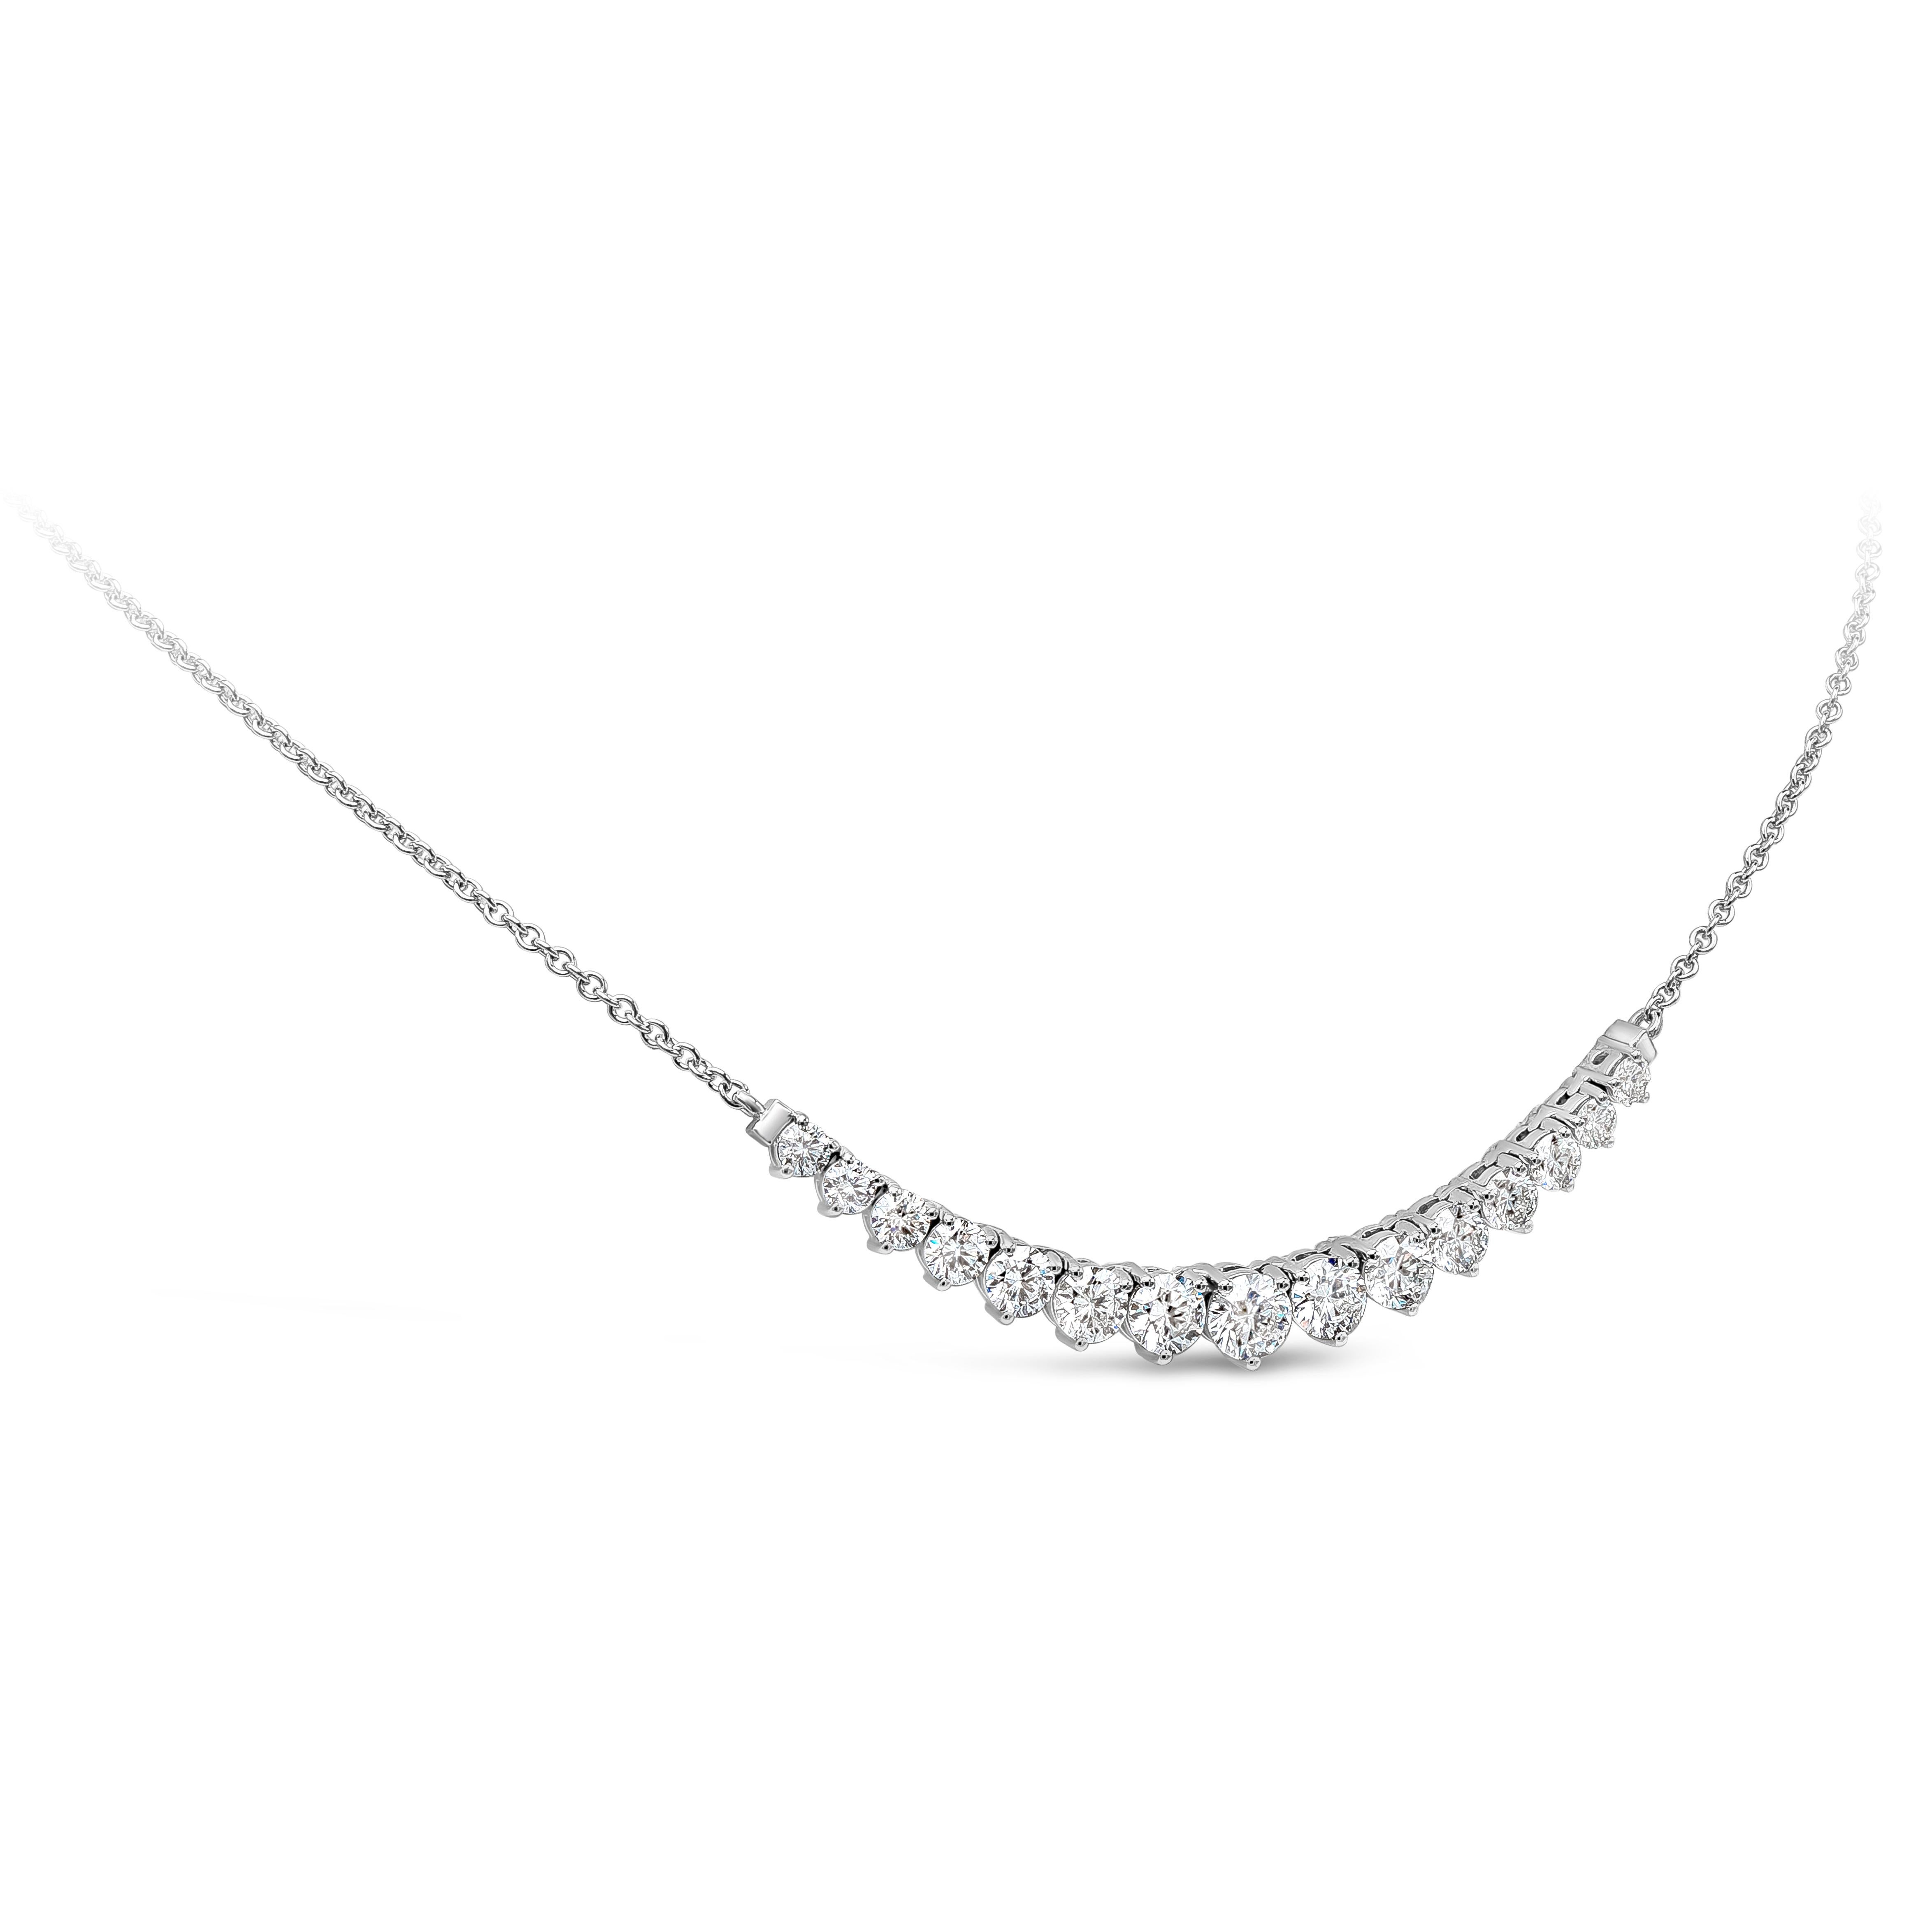 Eine modische Mini-Halskette im Riviere-Stil mit graduierten Diamanten im Brillantschliff mit einem Gesamtgewicht von 2,85 Karat und einer Farbe von ca. F-G und einer Reinheit von SI-I1, eingefasst in einer klassischen dreizackigen Korbfassung. Fein